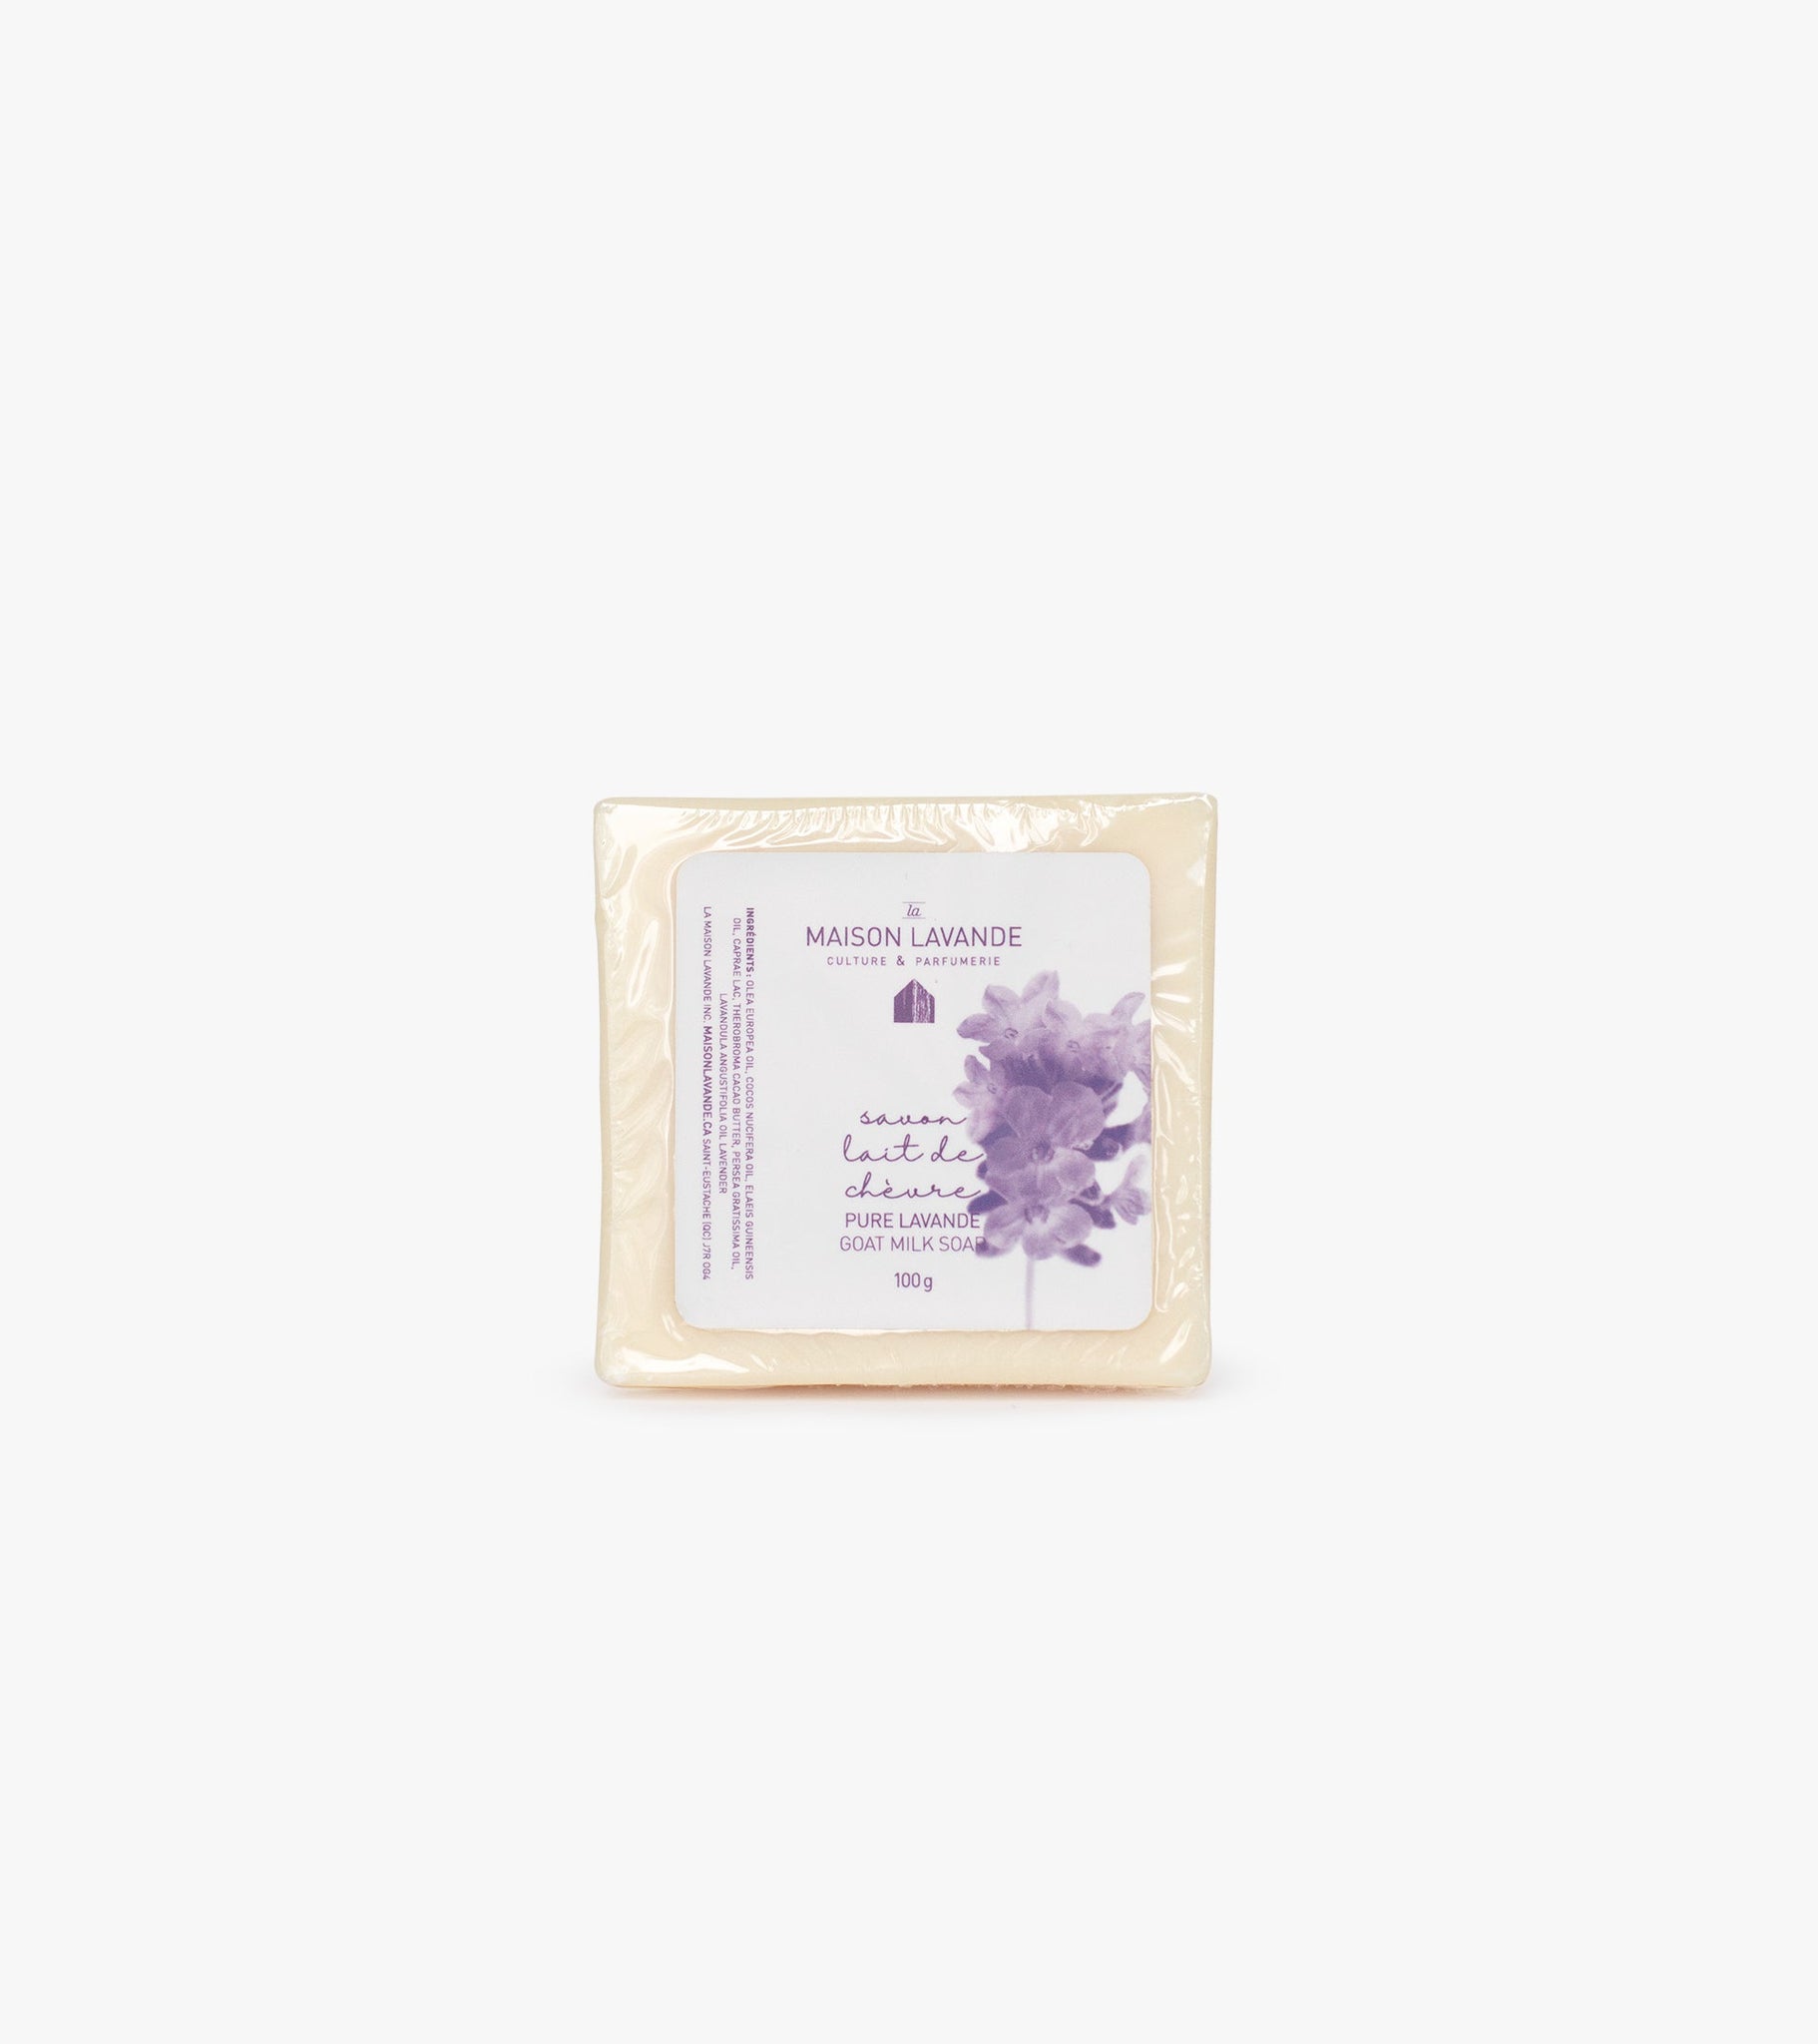 Savon - Chèvre & Lavande||Goat milk & Lavender soap